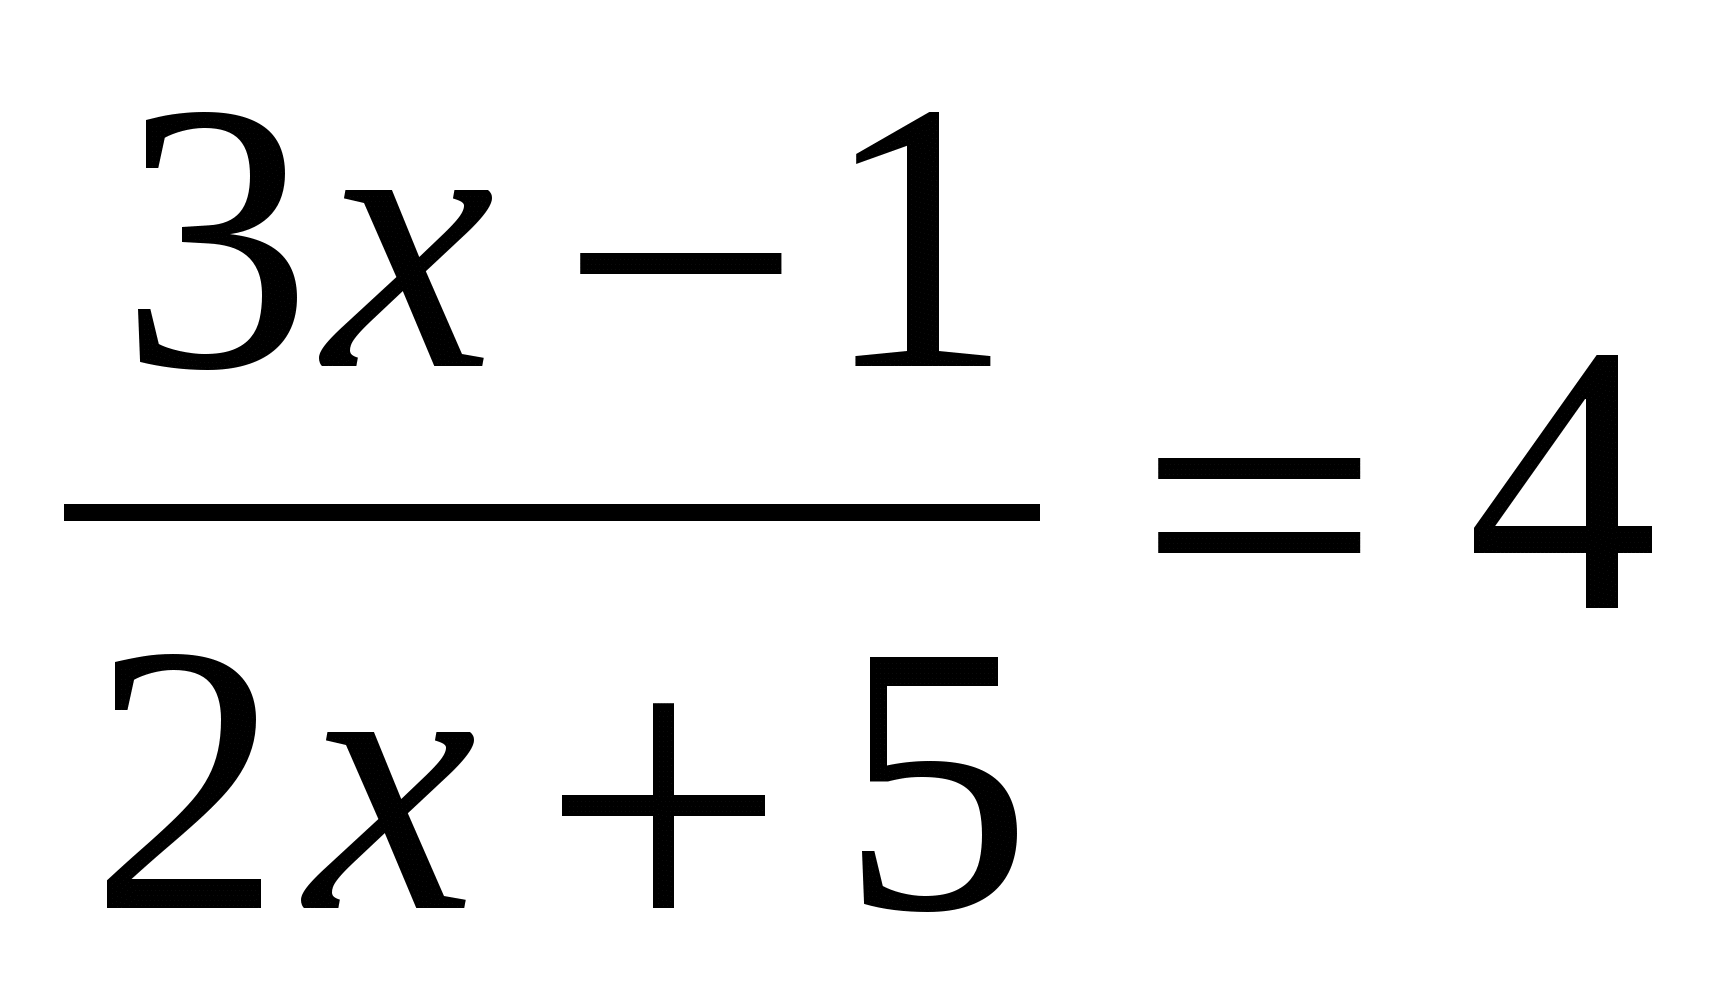 Методическая разработка по алгебре на тему Решение уравнений высших степеней (8 класс)